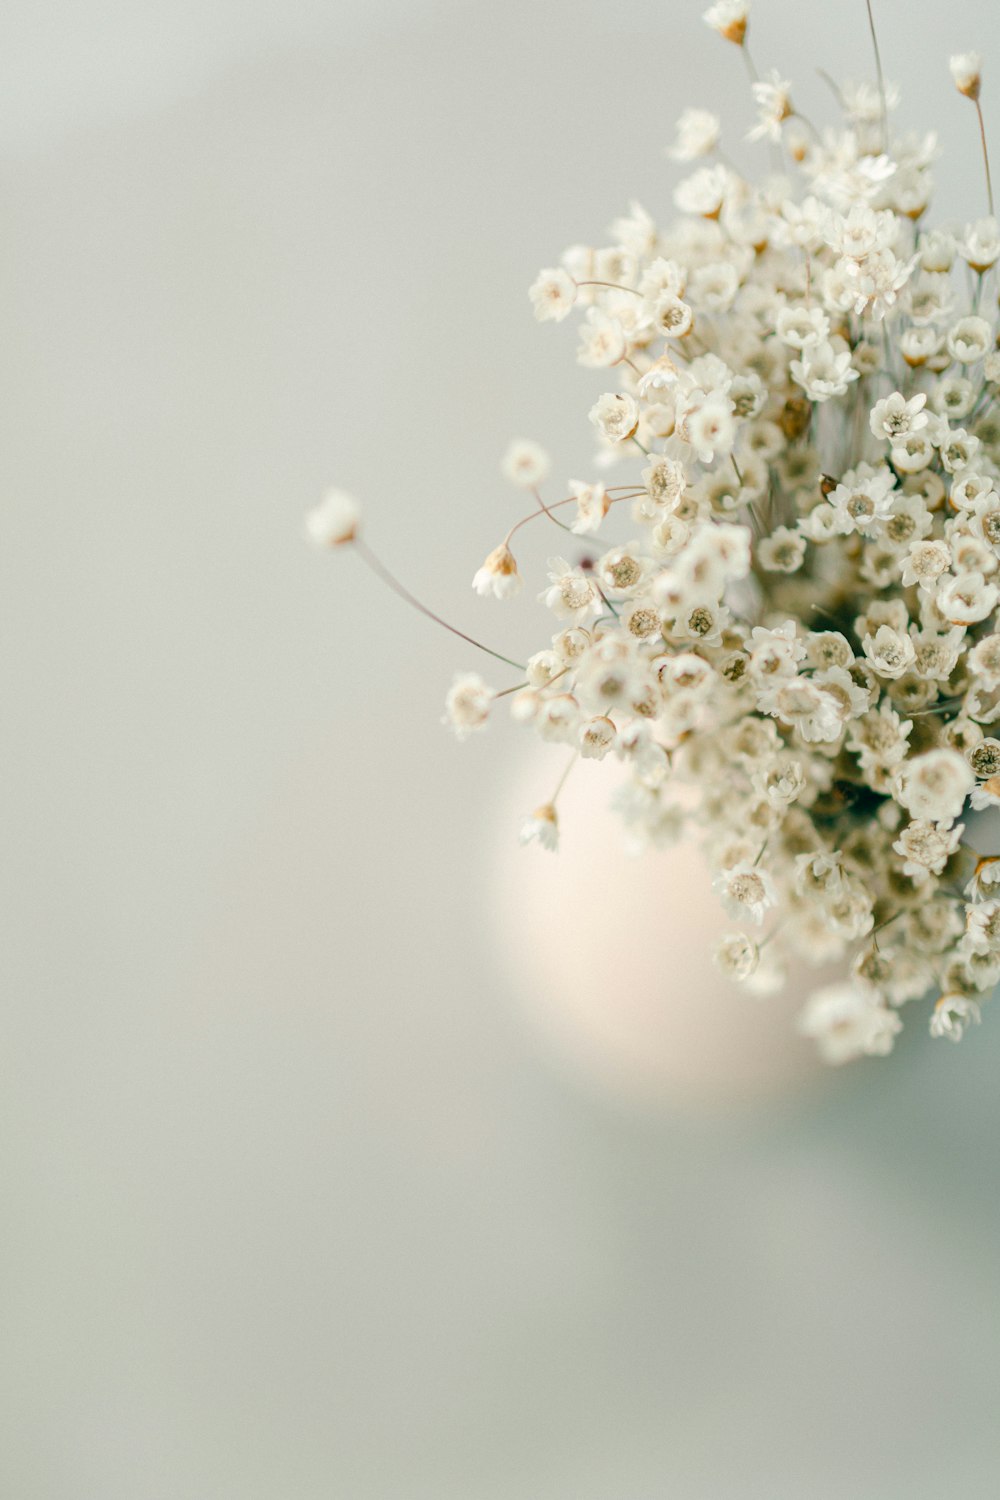 테이블 위에 흰 꽃으로 가득 찬 흰색 꽃병